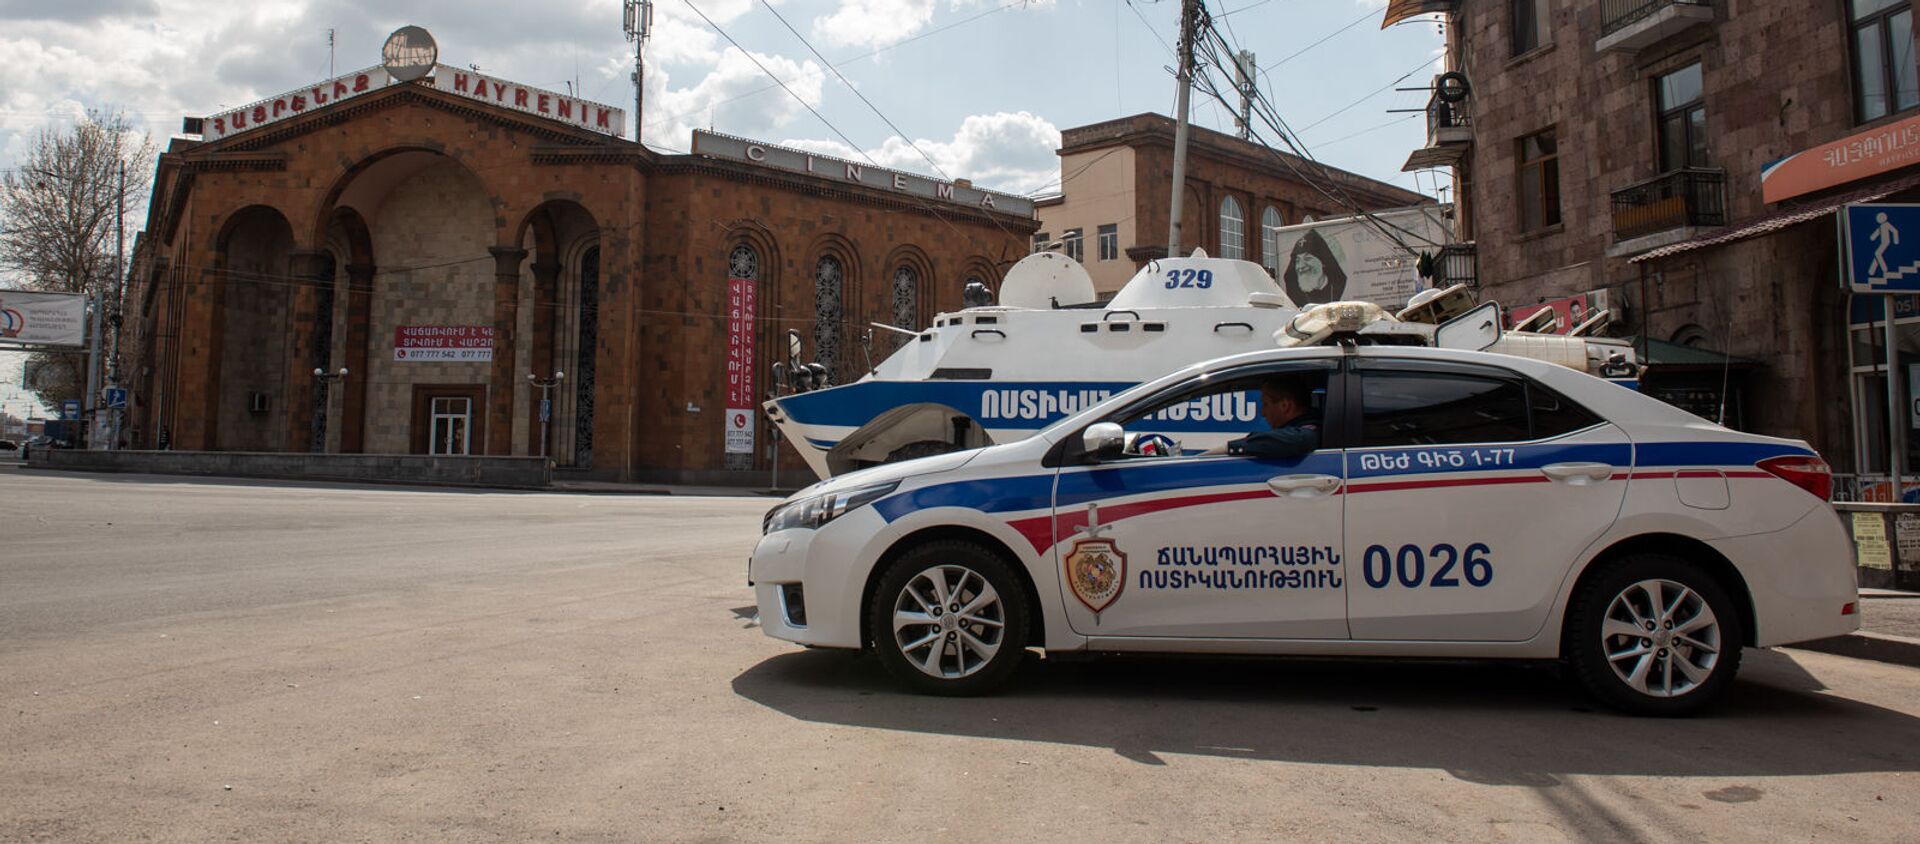 Бронетехника и полиция на улицах Еревана во время чрезвычайной ситуации (25 марта 2020). Ереван - Sputnik Армения, 1920, 20.06.2021